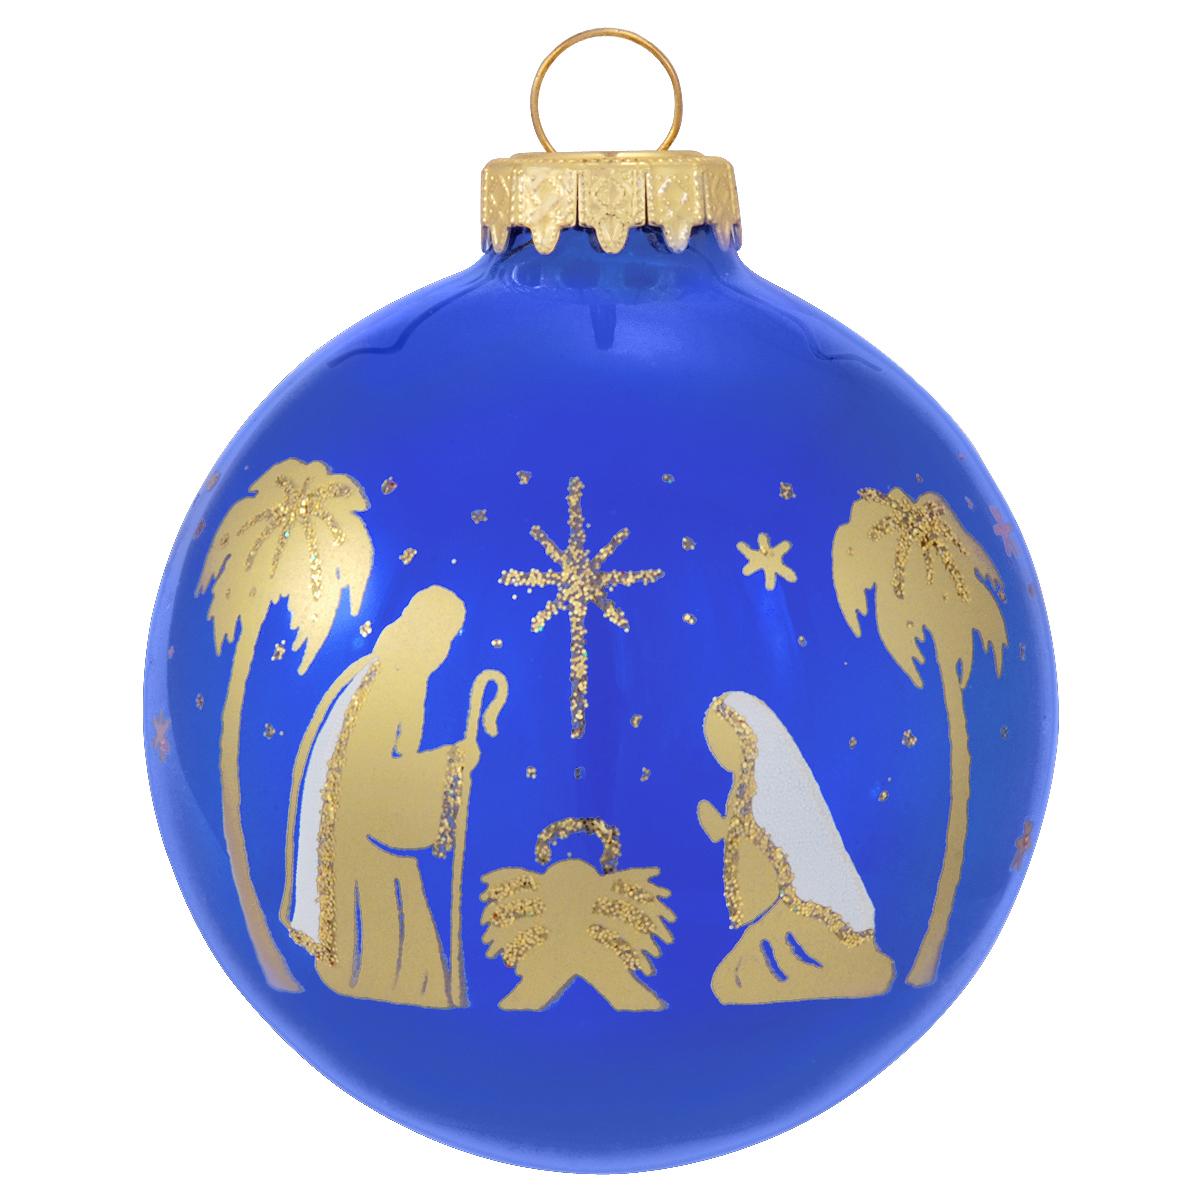 MAROLIN® - Glass ornament Dwarf with blue cap - MyBrilliantStar